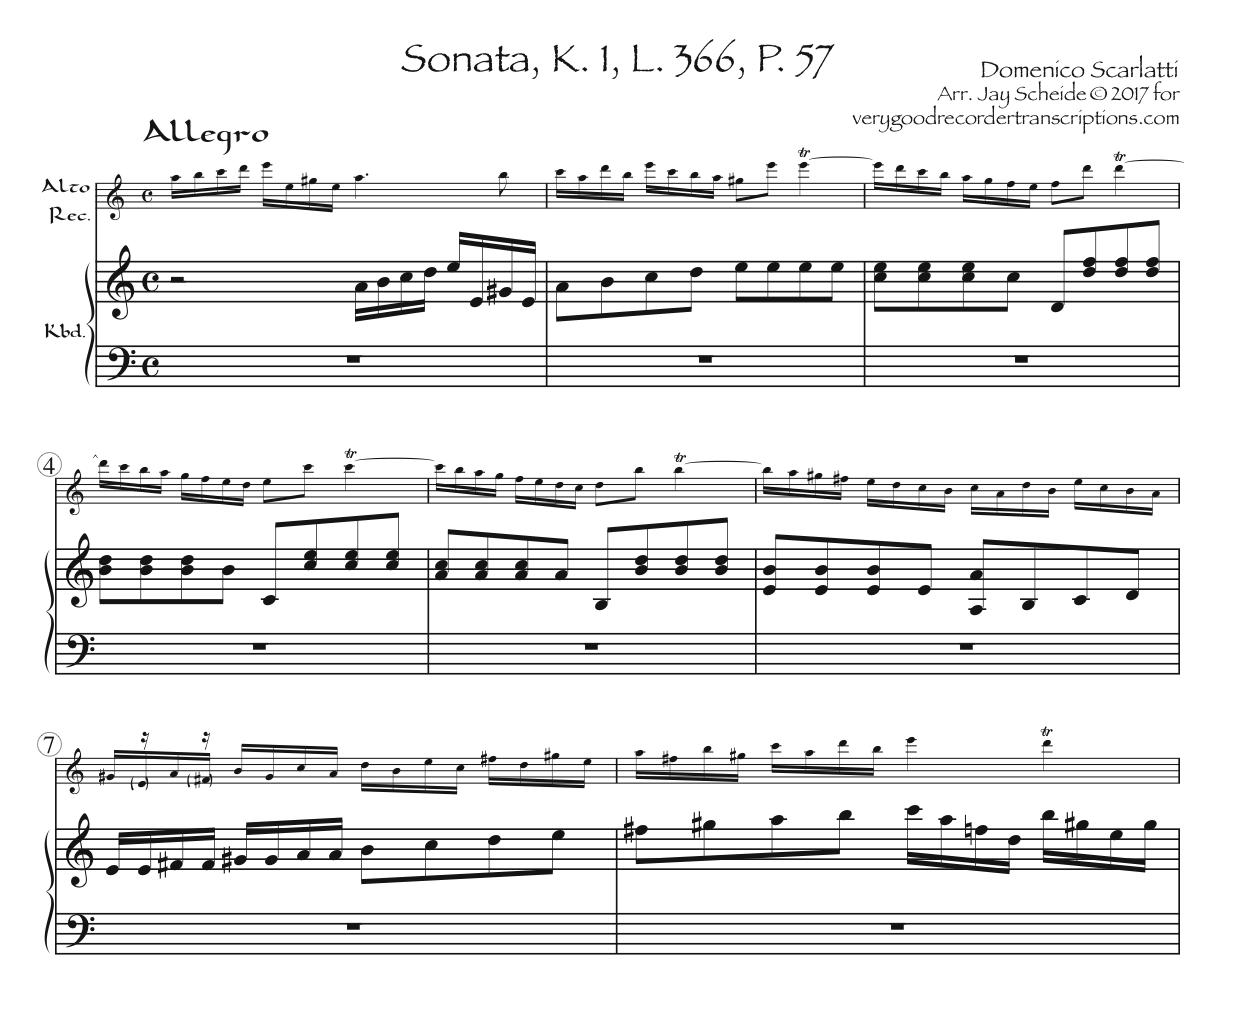 Sonata K. 1, L. 366, P. 57